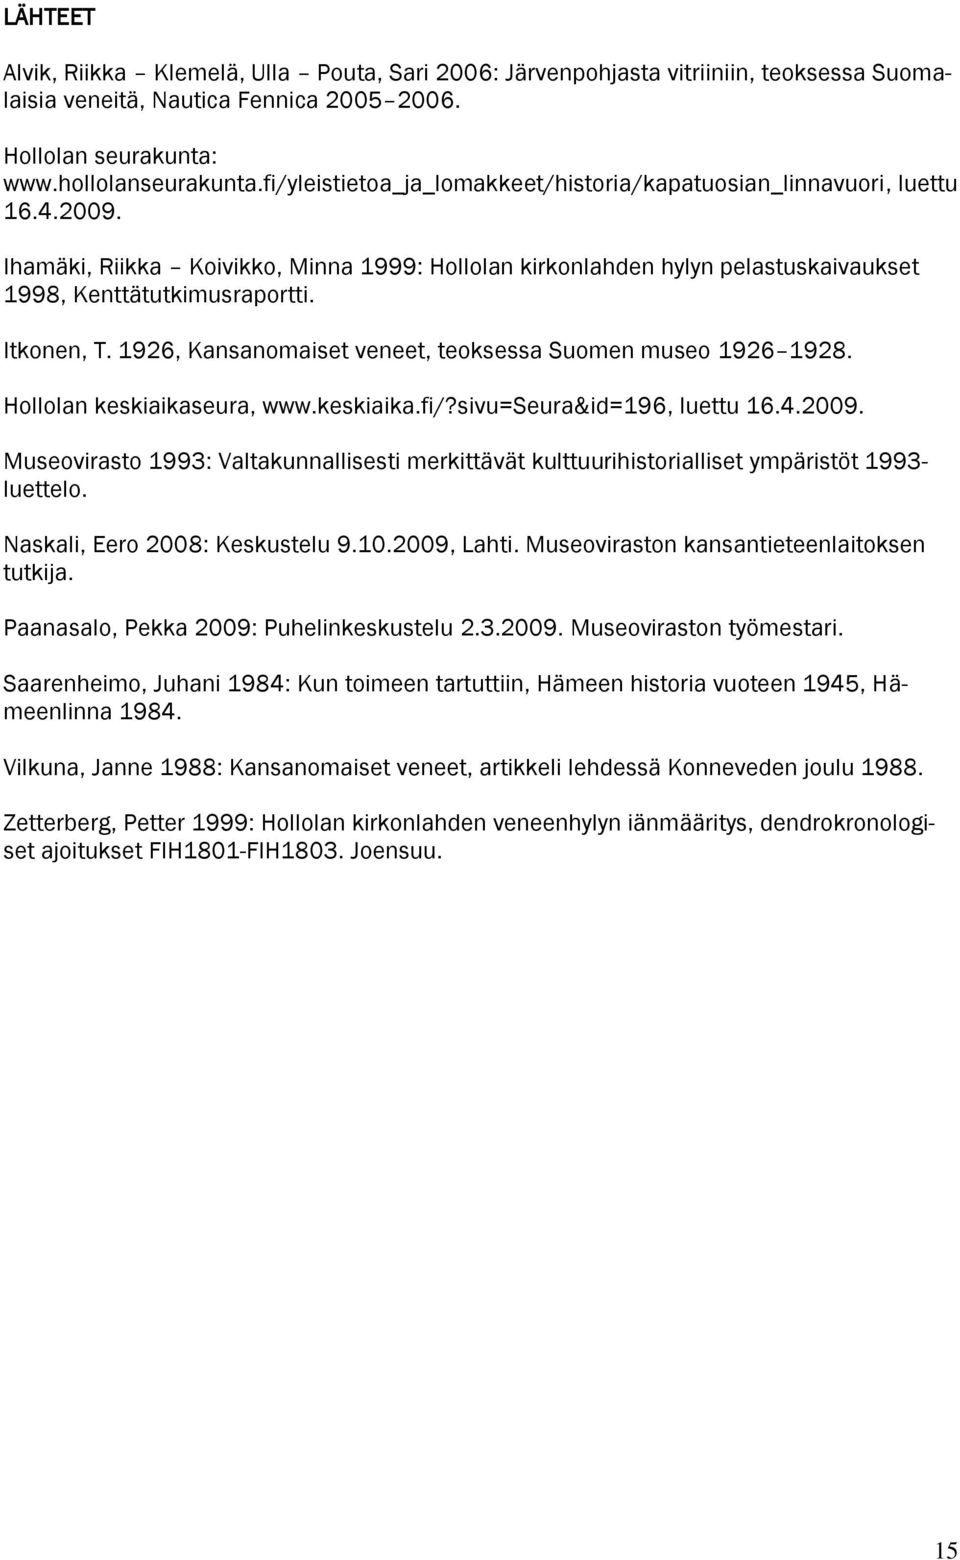 Itkonen, T. 1926, Kansanomaiset veneet, teoksessa Suomen museo 1926 1928. Hollolan keskiaikaseura, www.keskiaika.fi/?sivu=seura&id=196, luettu 16.4.2009.